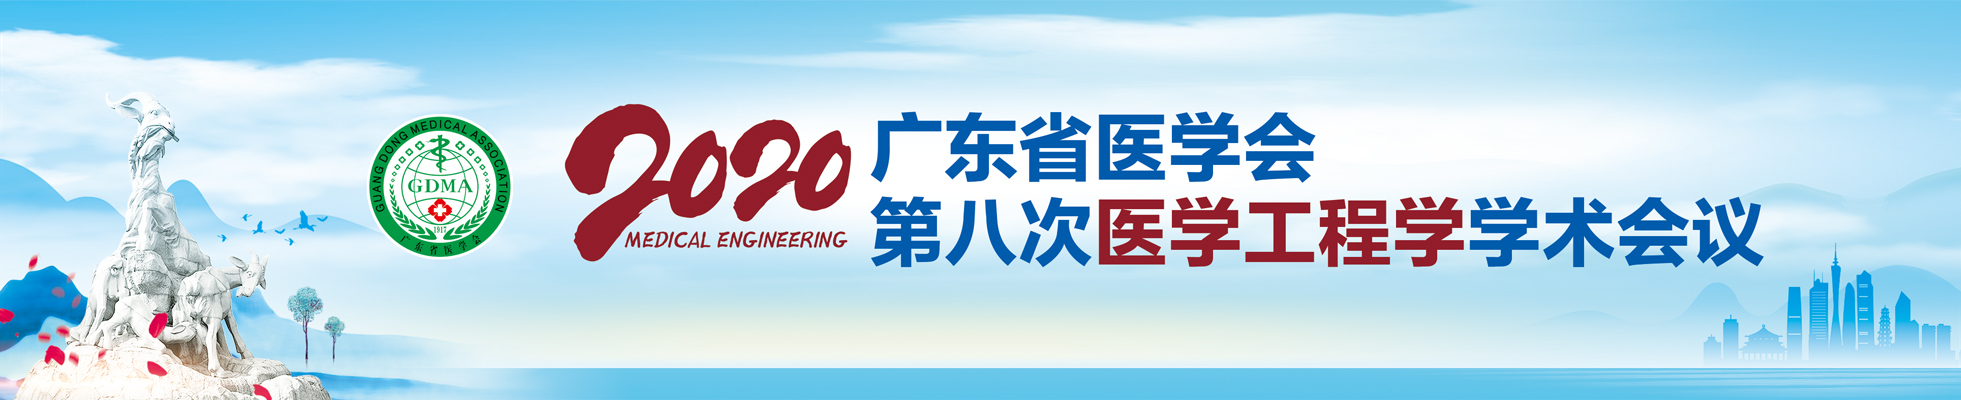 广东省医学会第八次医学工程学学术会议